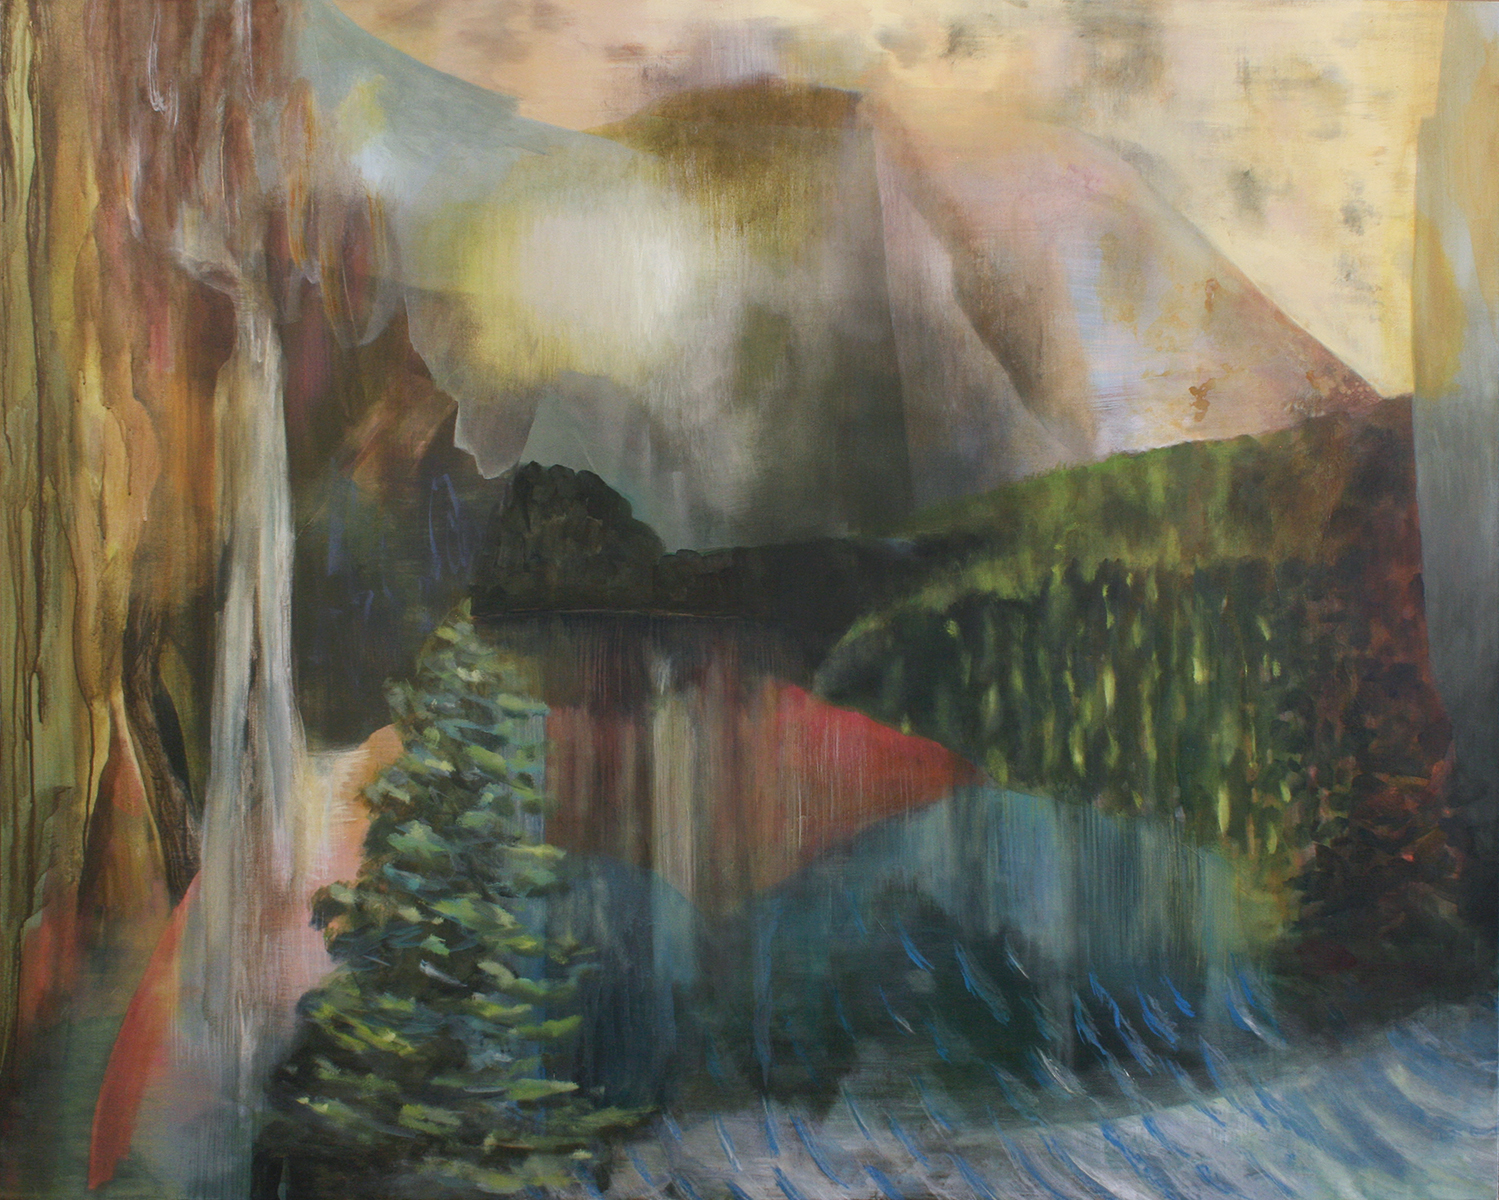 ethereal, dream-like, fantasy, landscape, Banff National Park, prism